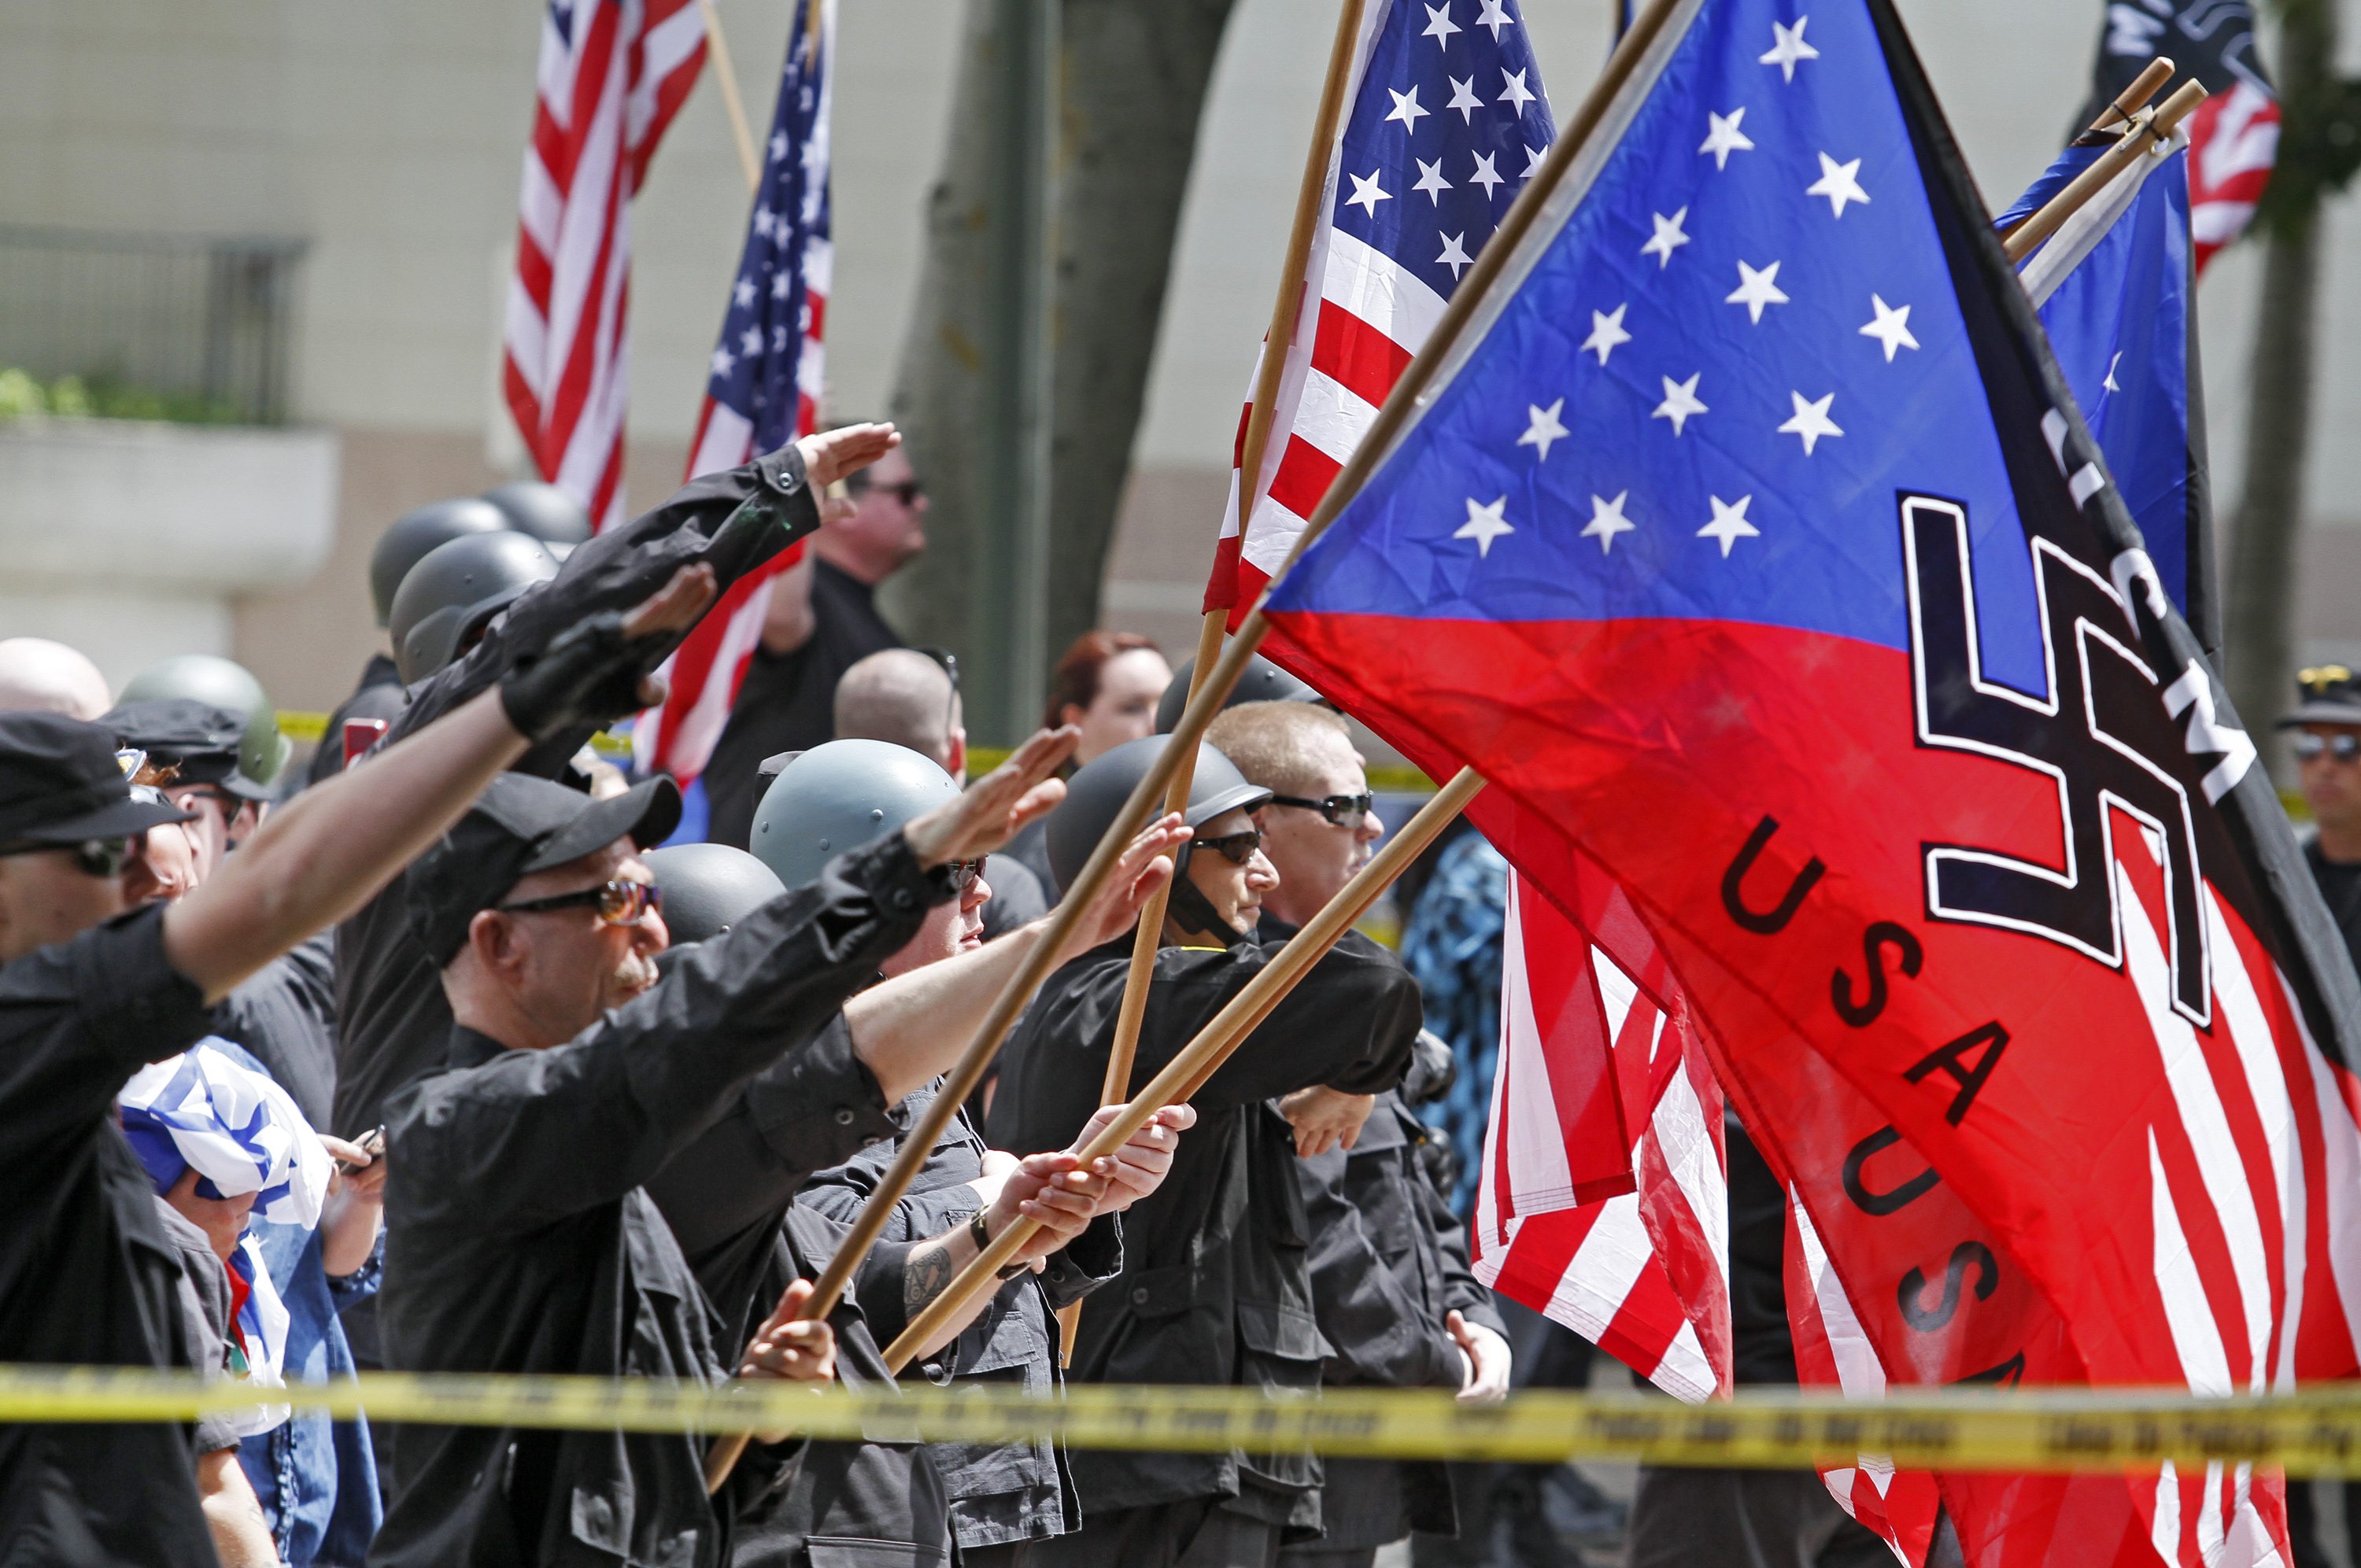 Национал социалистическое движение. Нацисты в США. Нацистская партия США. Америка фашисты. Фашистские марши в США.